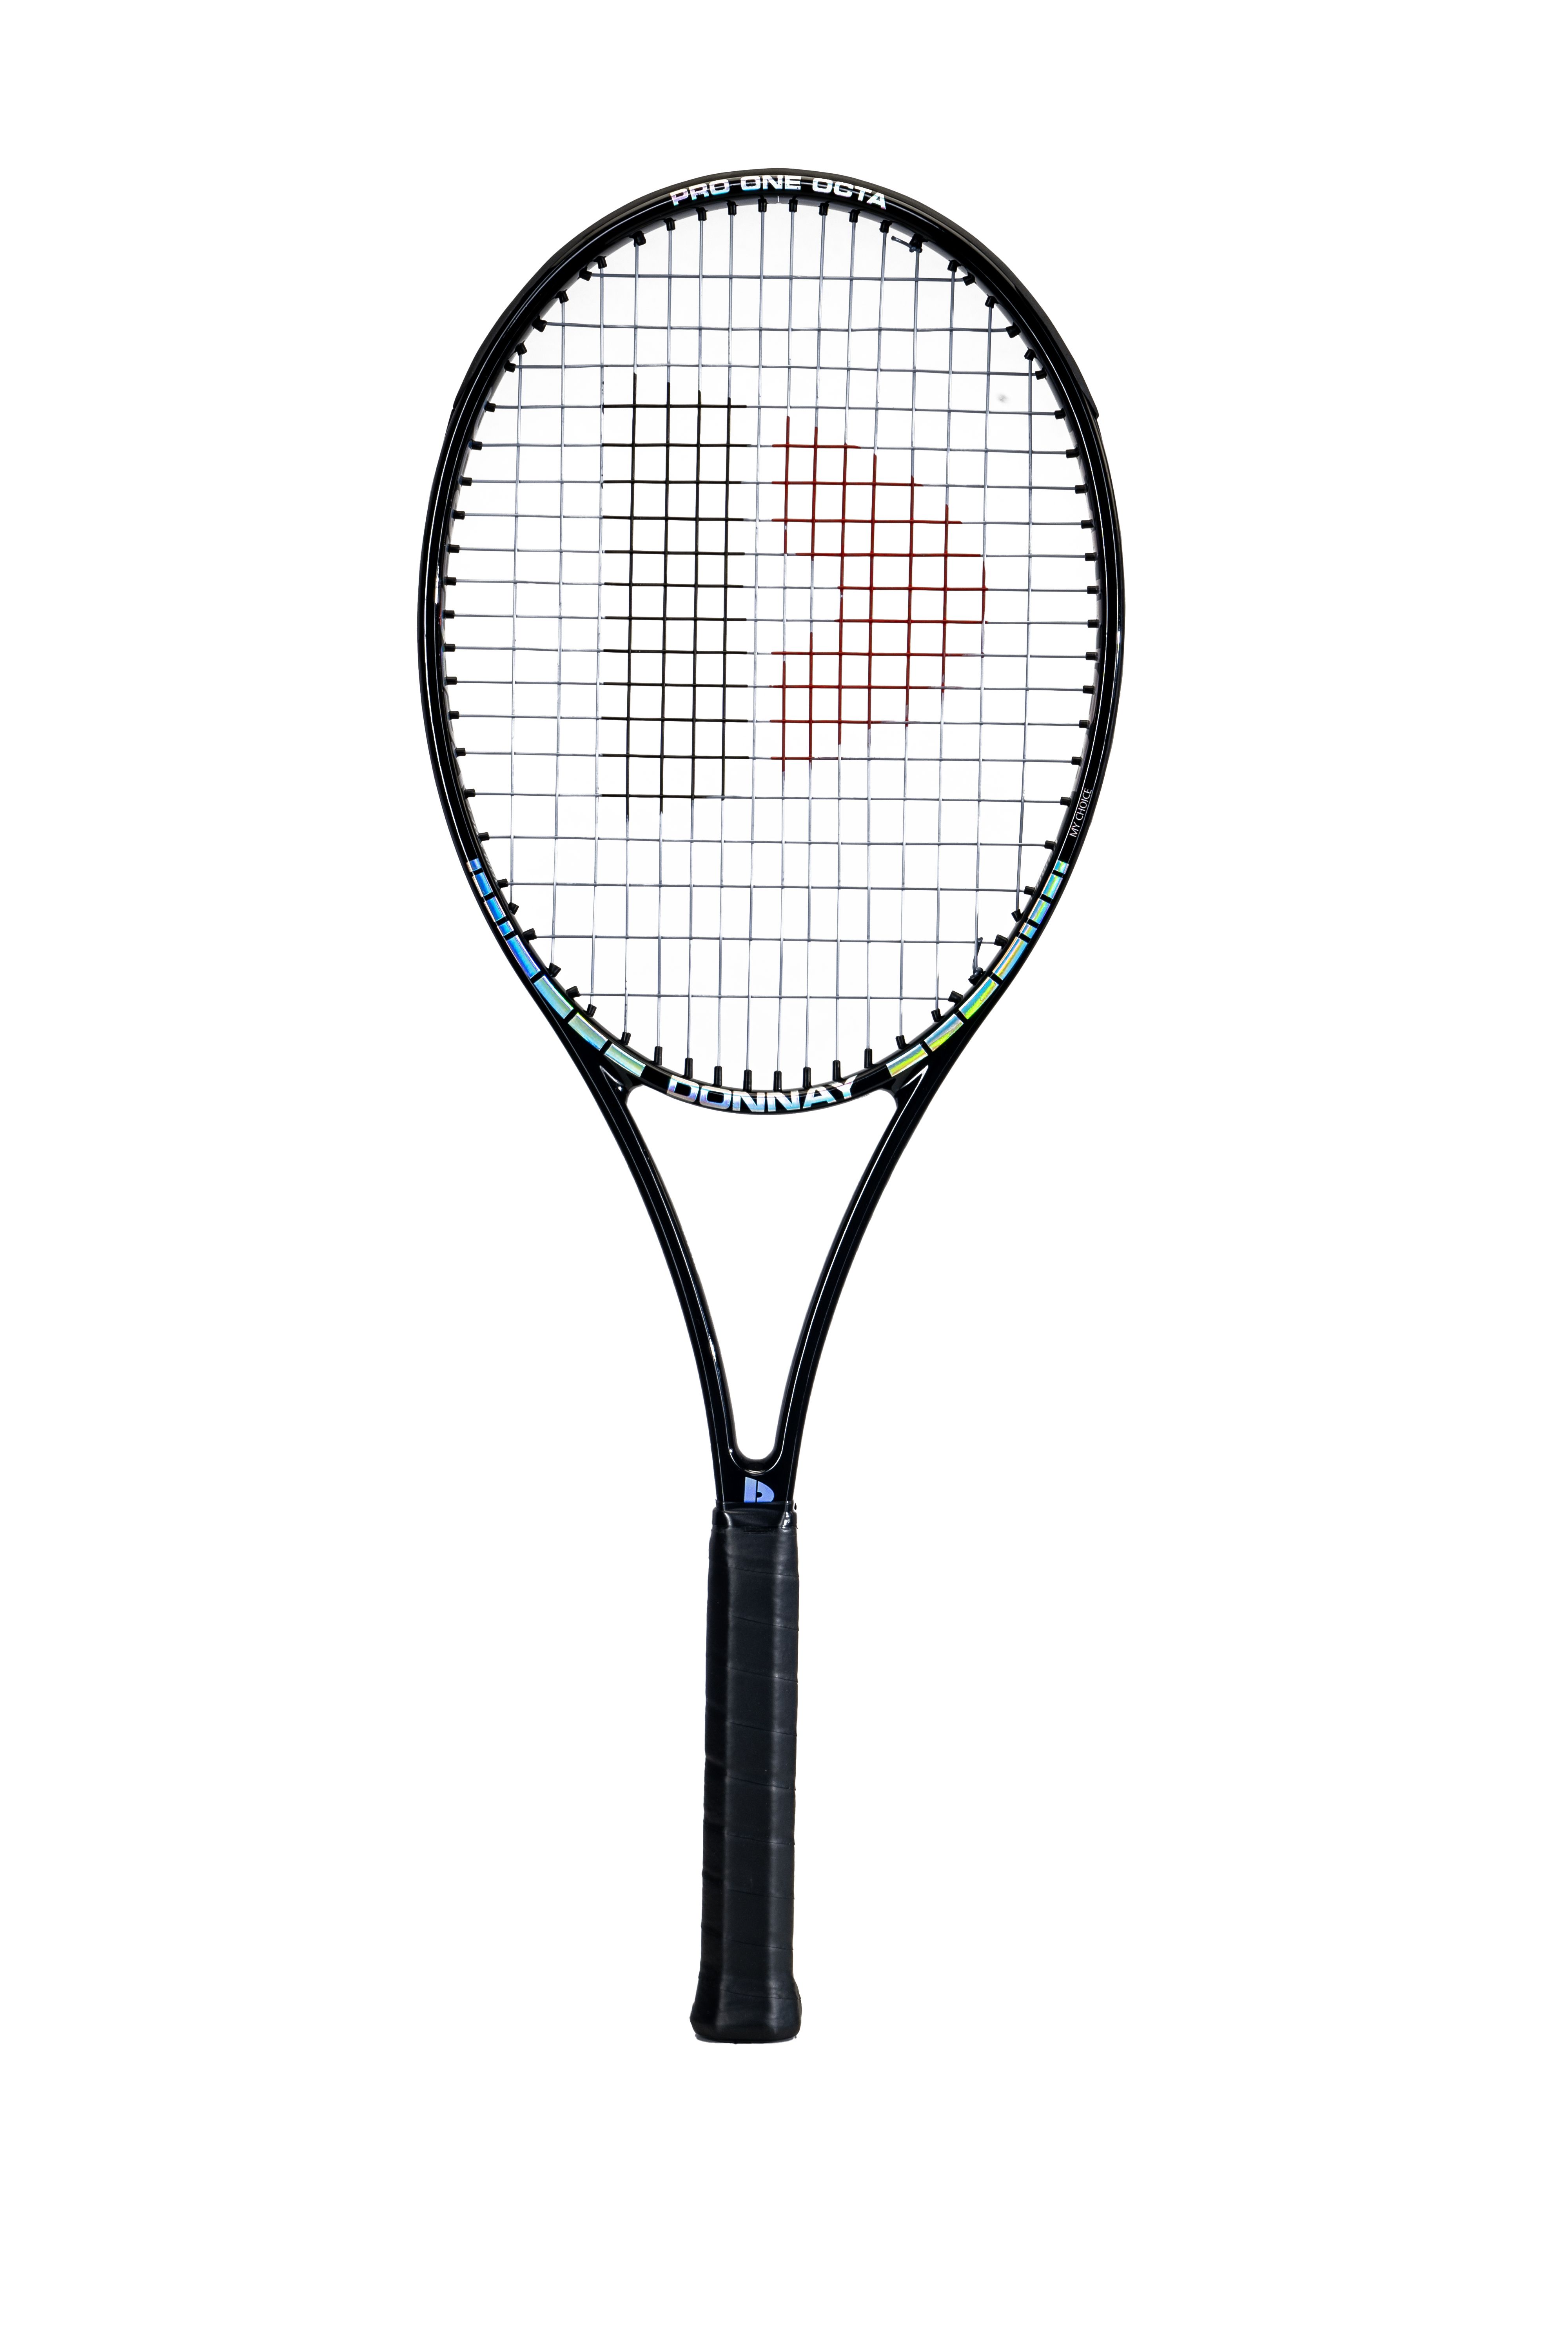 DONNAY Pro One Octa 97 Tennis Racquet - strung